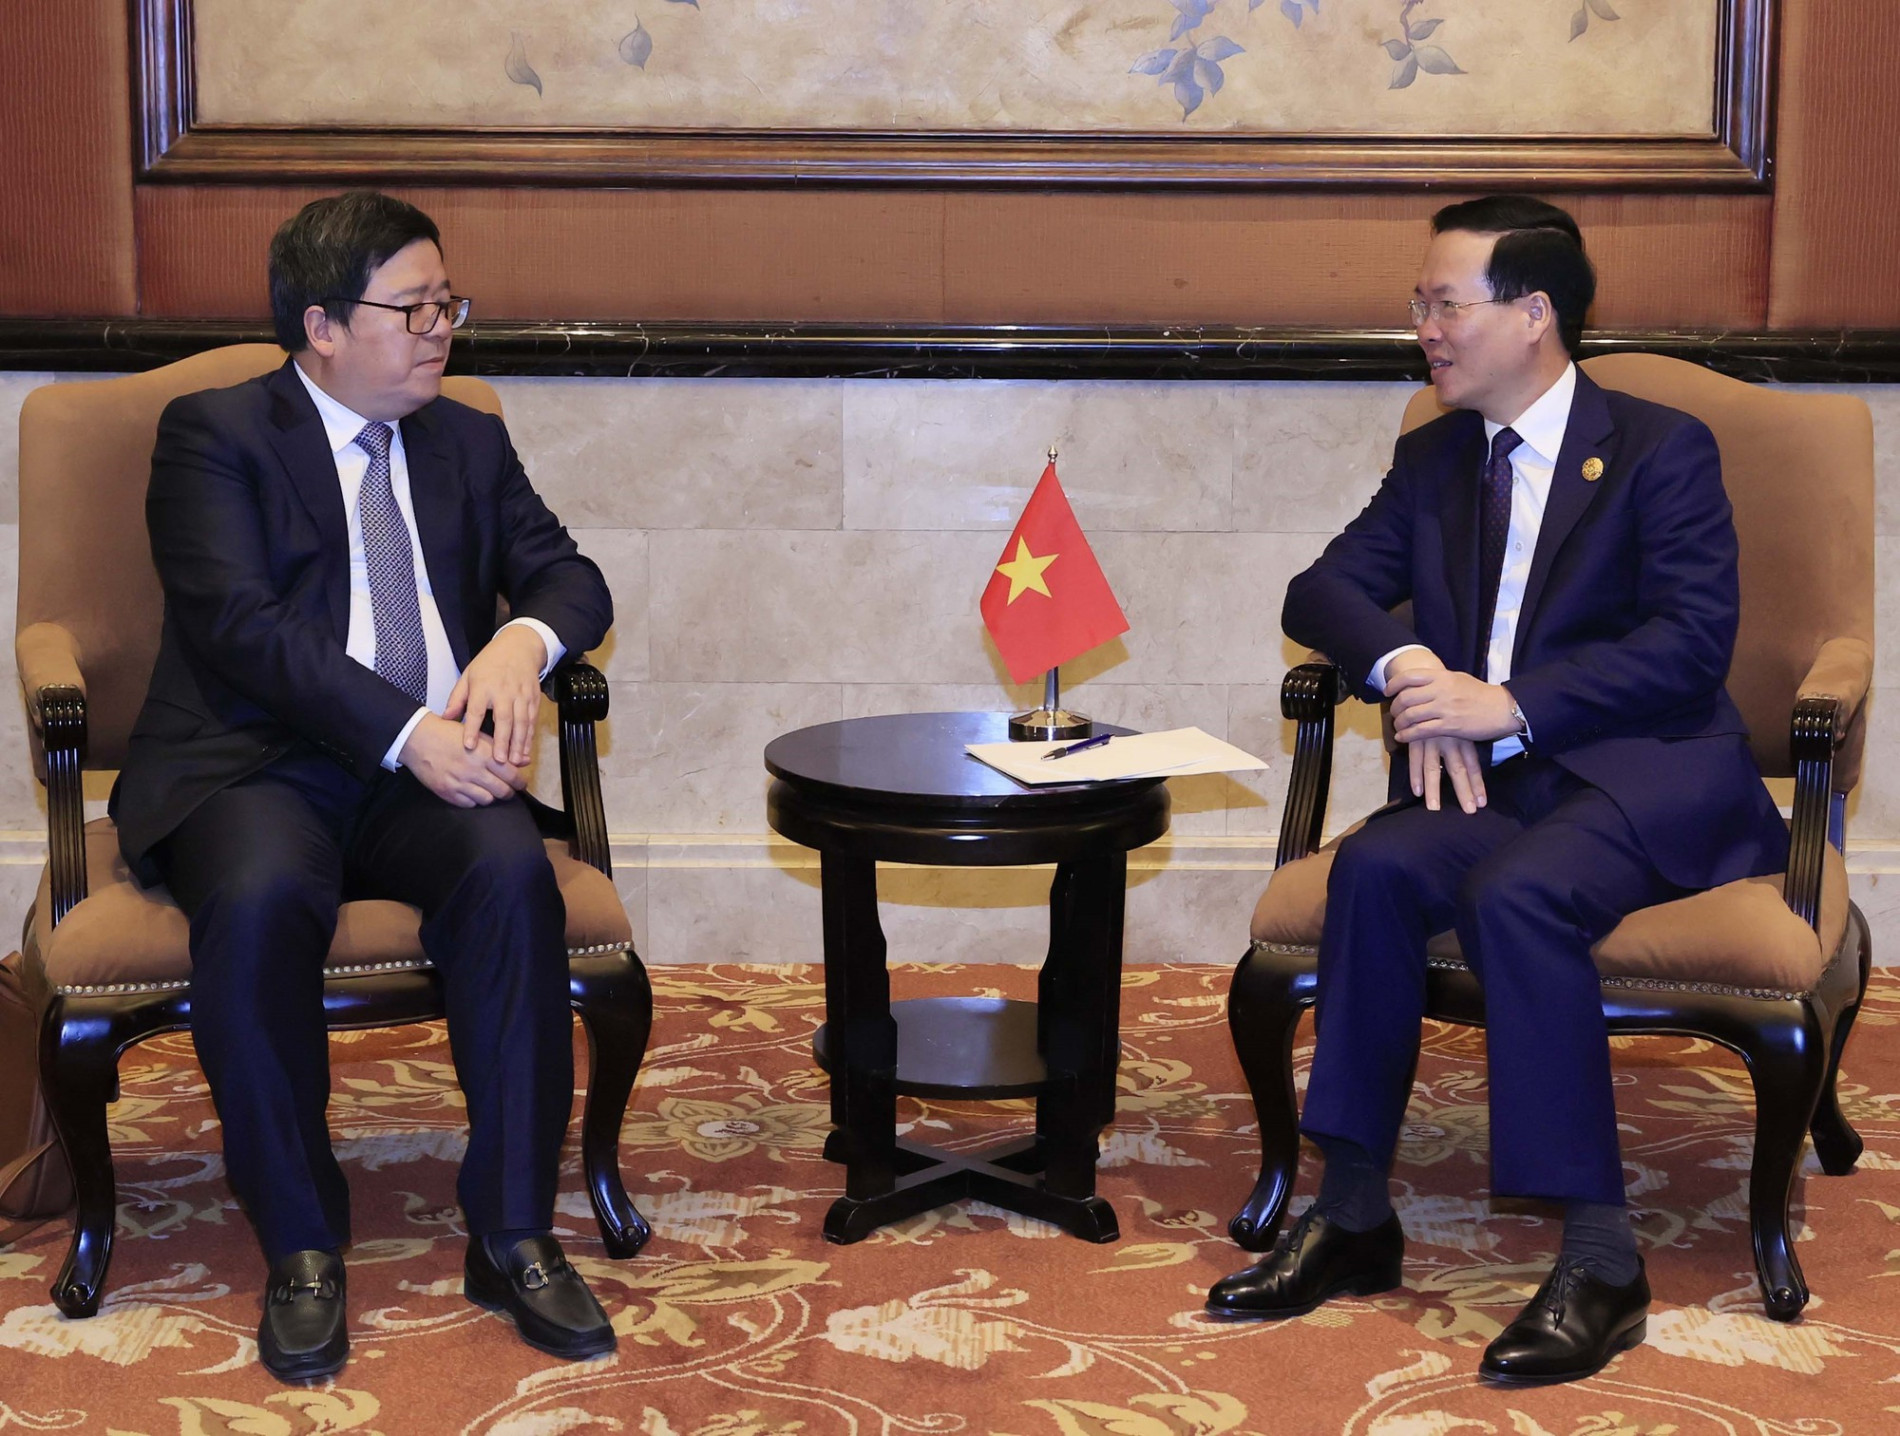 Chủ tịch nước Võ Văn Thưởng tiếp lãnh đạo các tập đoàn hàng đầu của Trung Quốc - Ảnh 2.